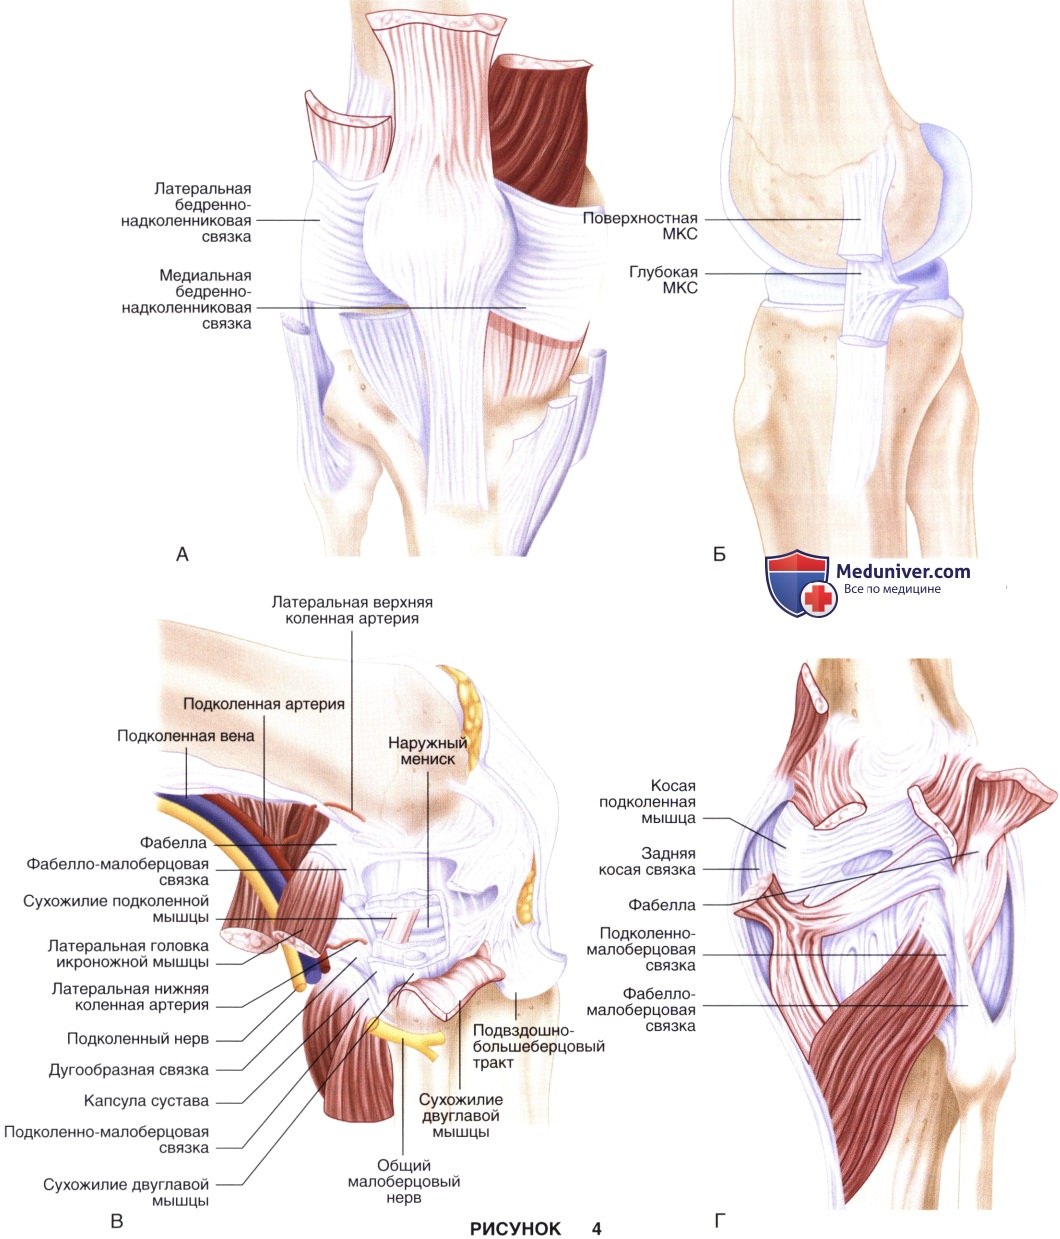 Показания, подготовка к тотальному эндопротезированию коленного сустава